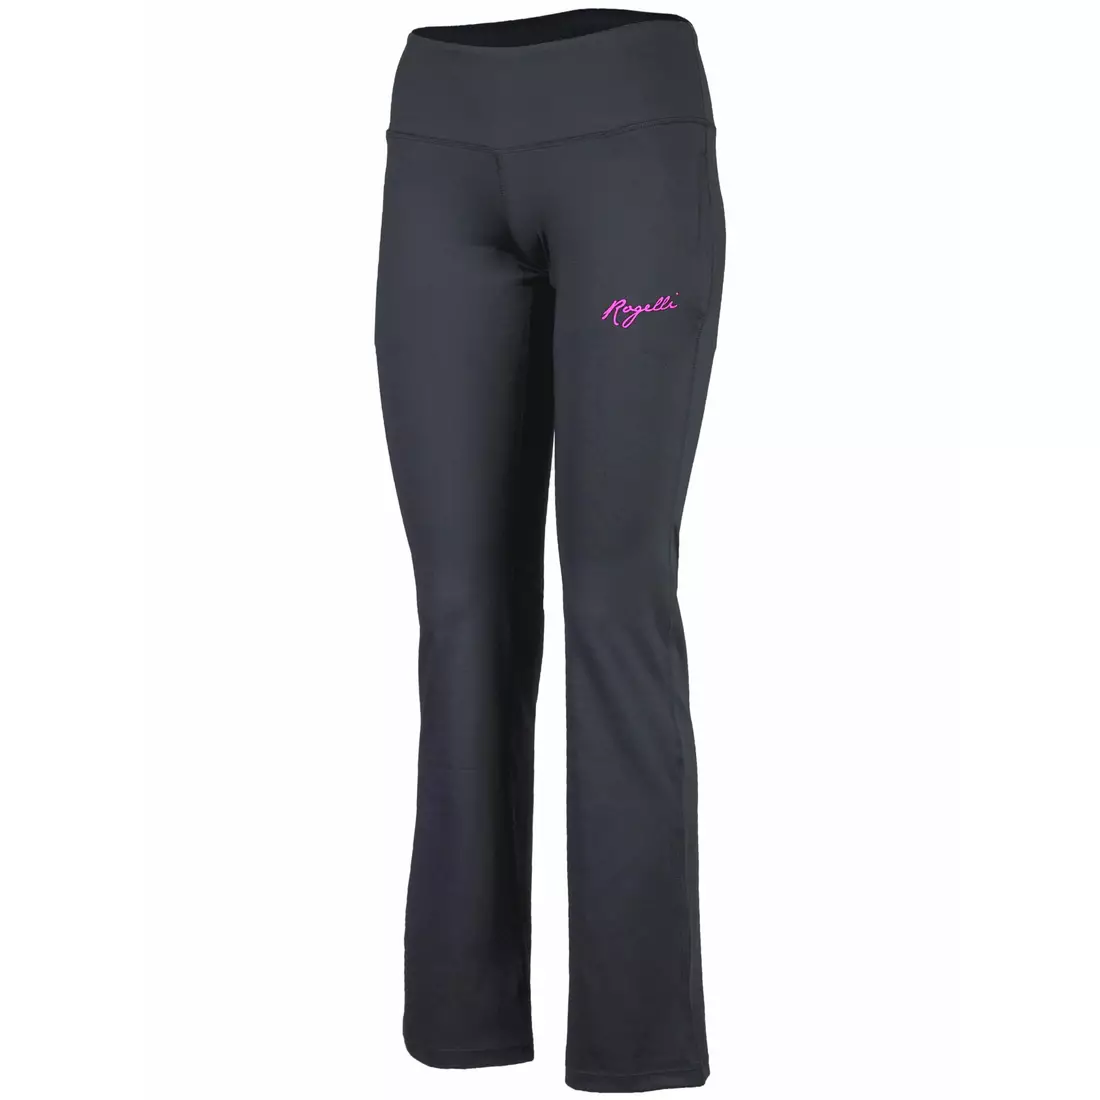 ROGELLI pantaloni de antrenament / fitness pentru femei FAYDA, negru, 050.208.